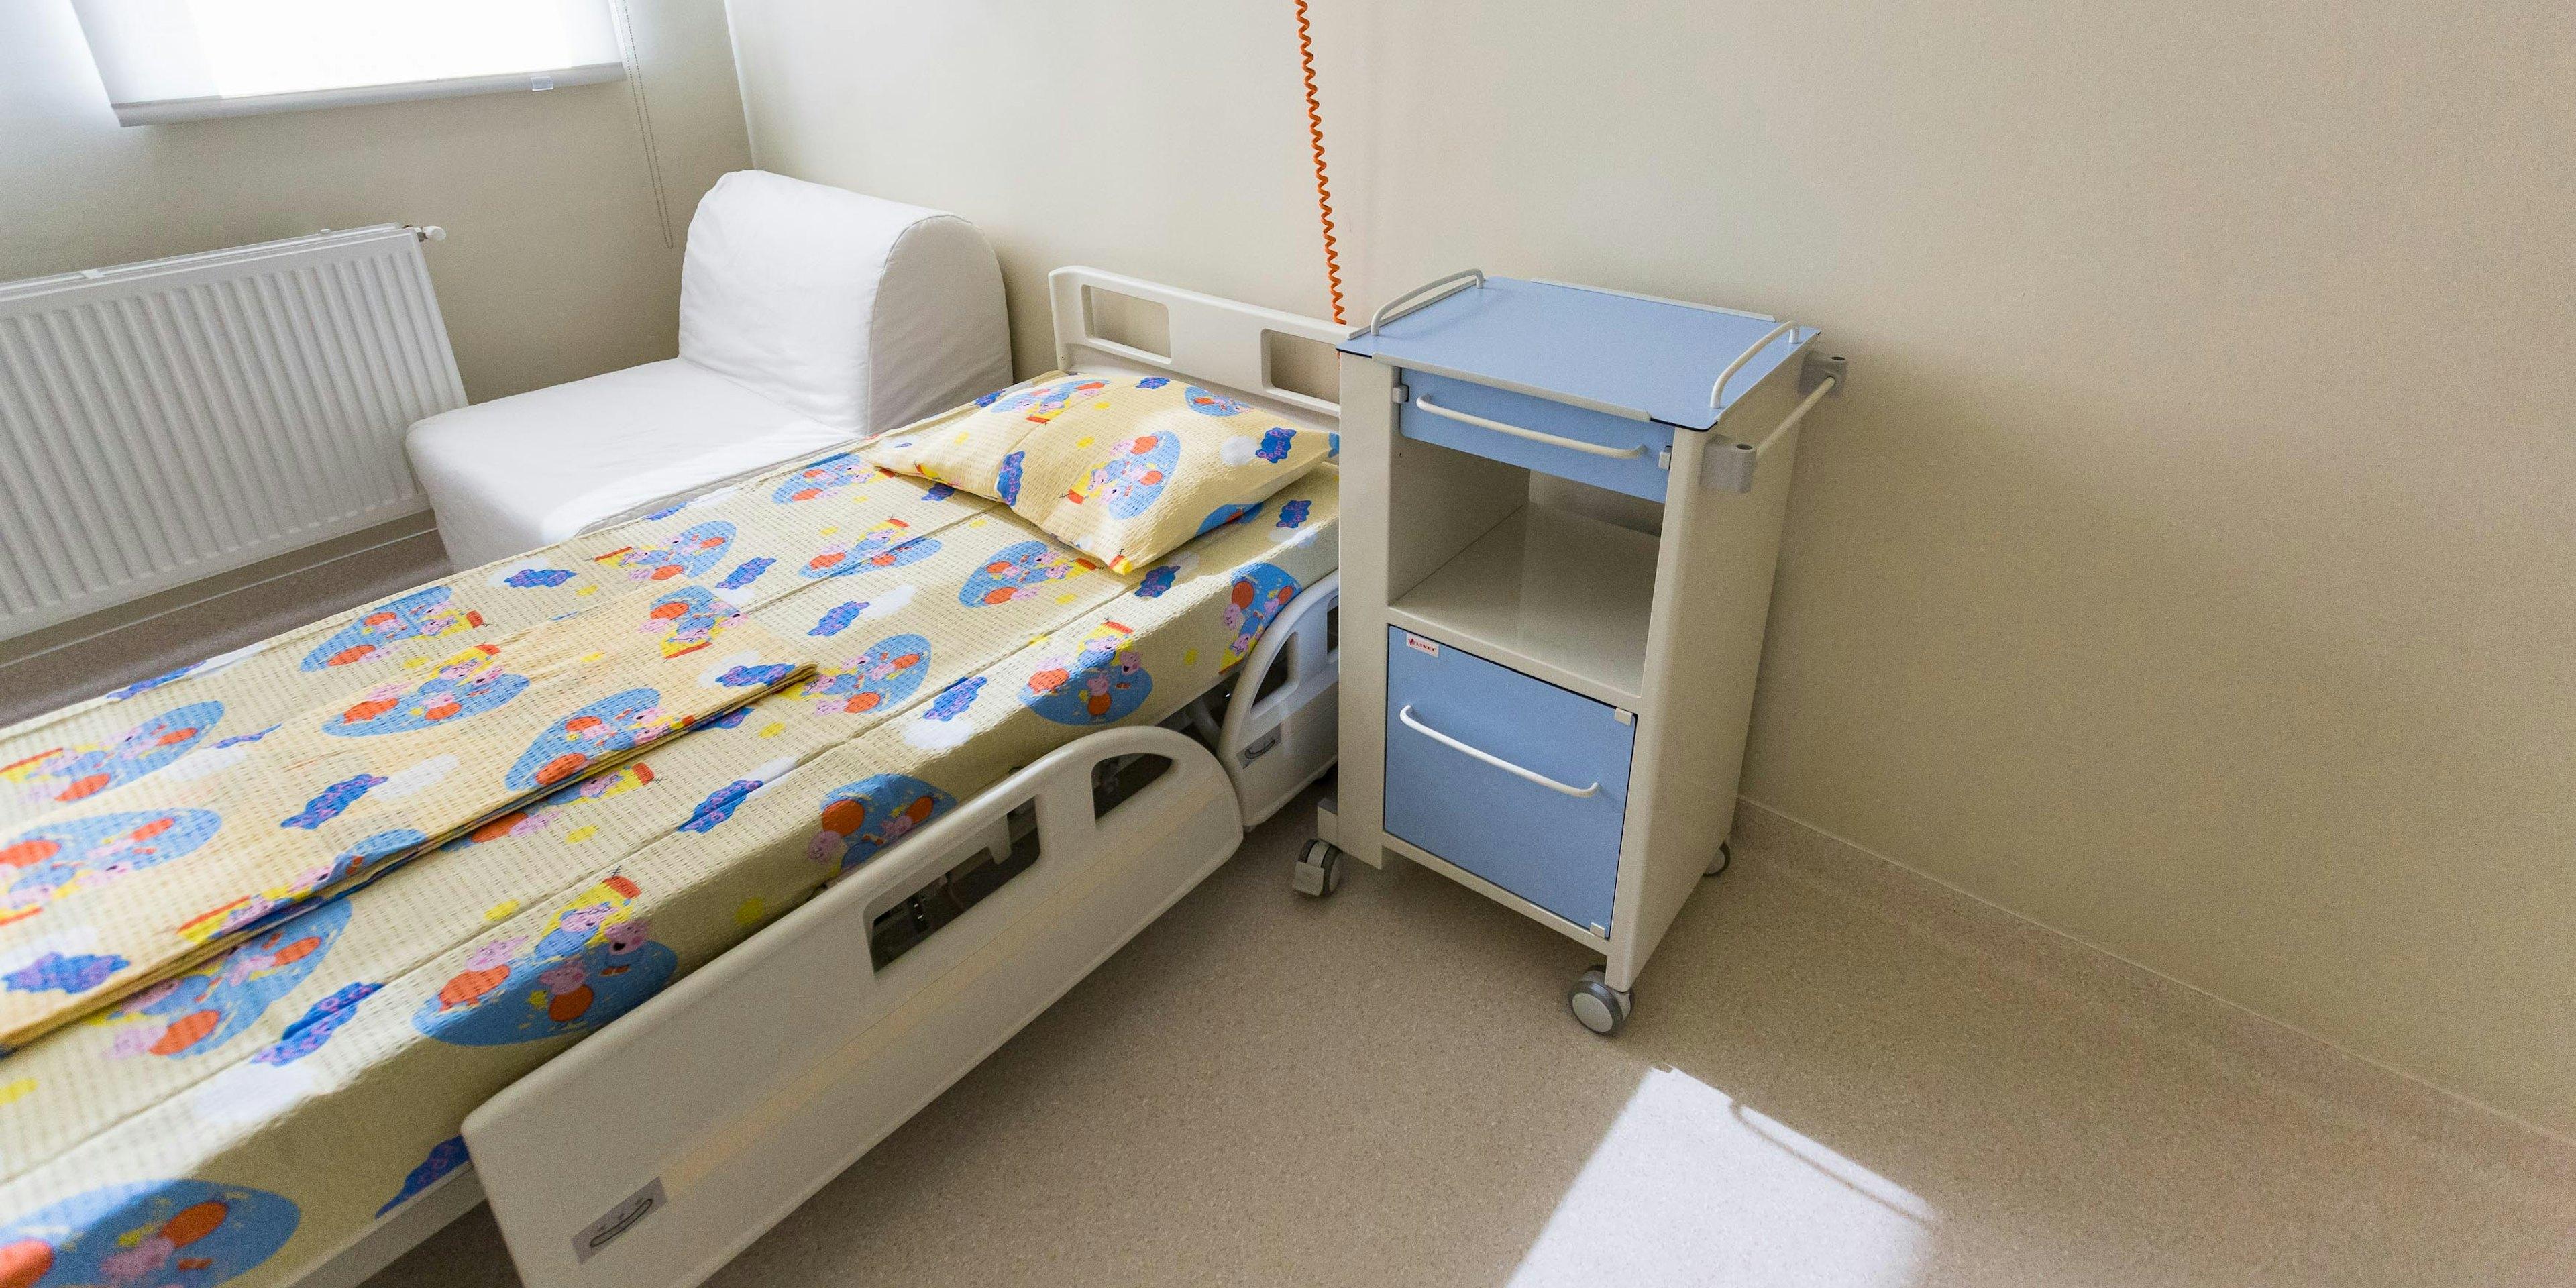 Camere sterile pentru Spitalul de Copii din Cluj-Napoca